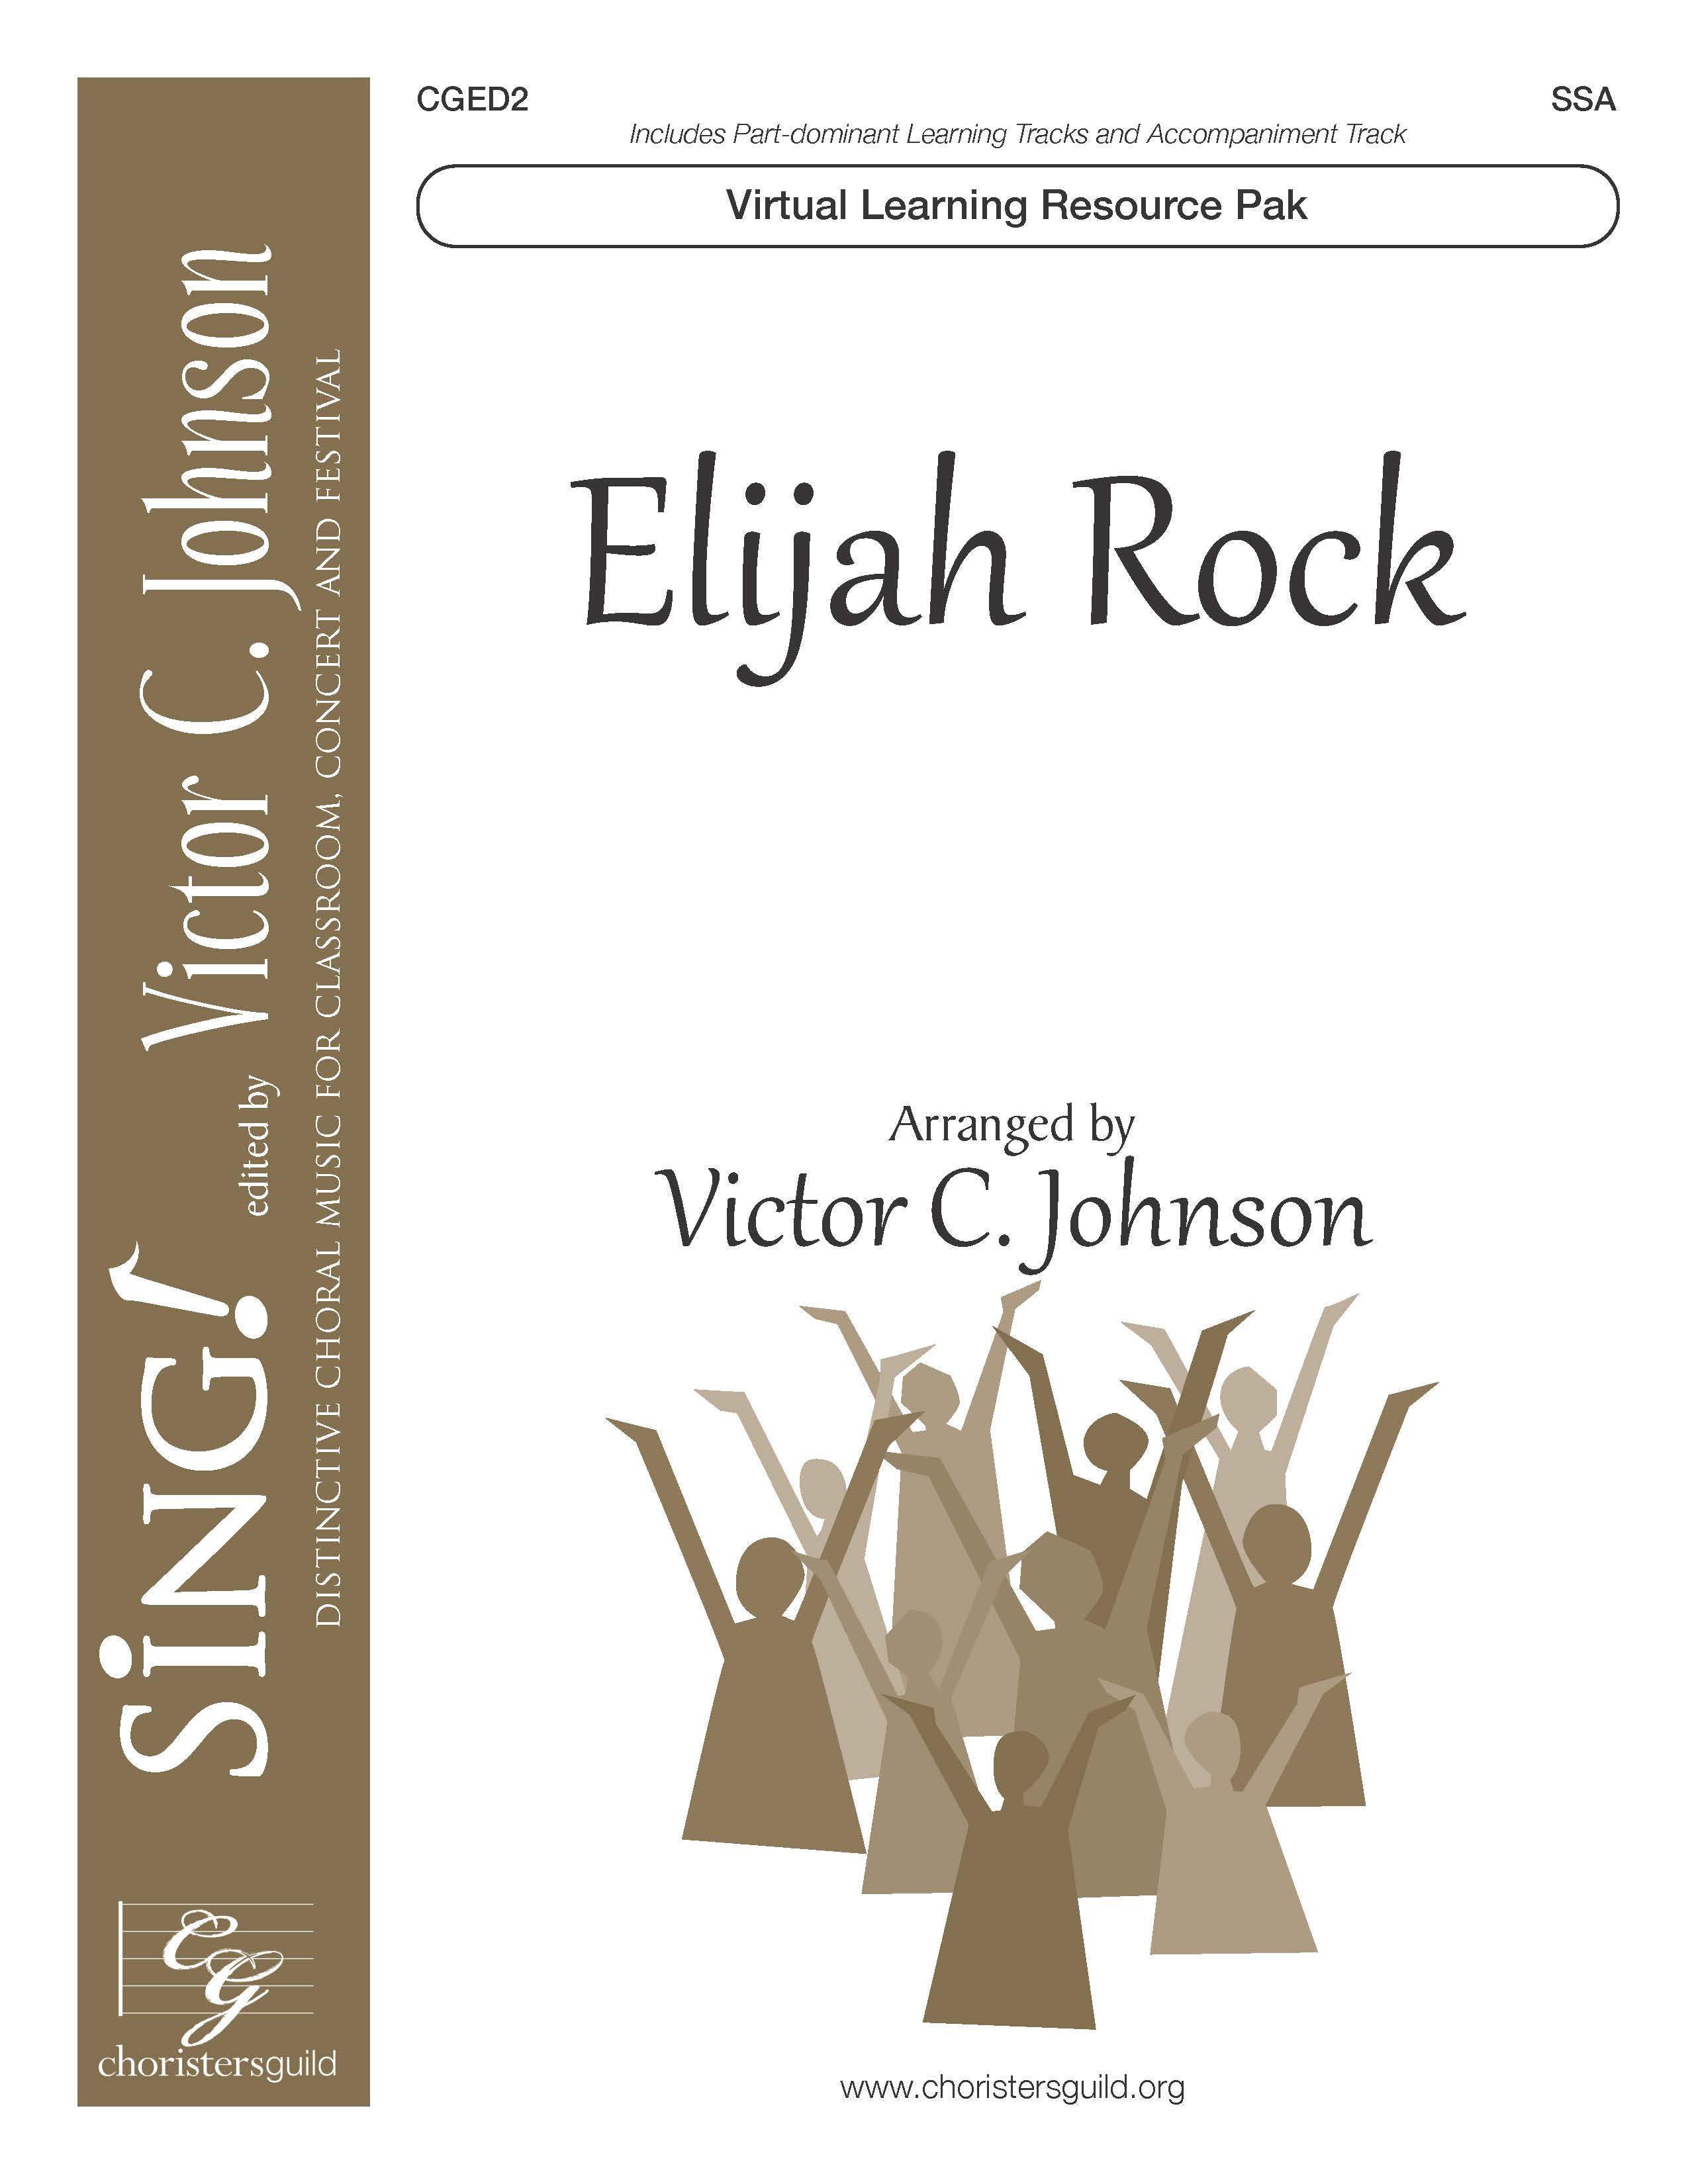 Elijah Rock (Virtual Learning Resource Pak) - SSA